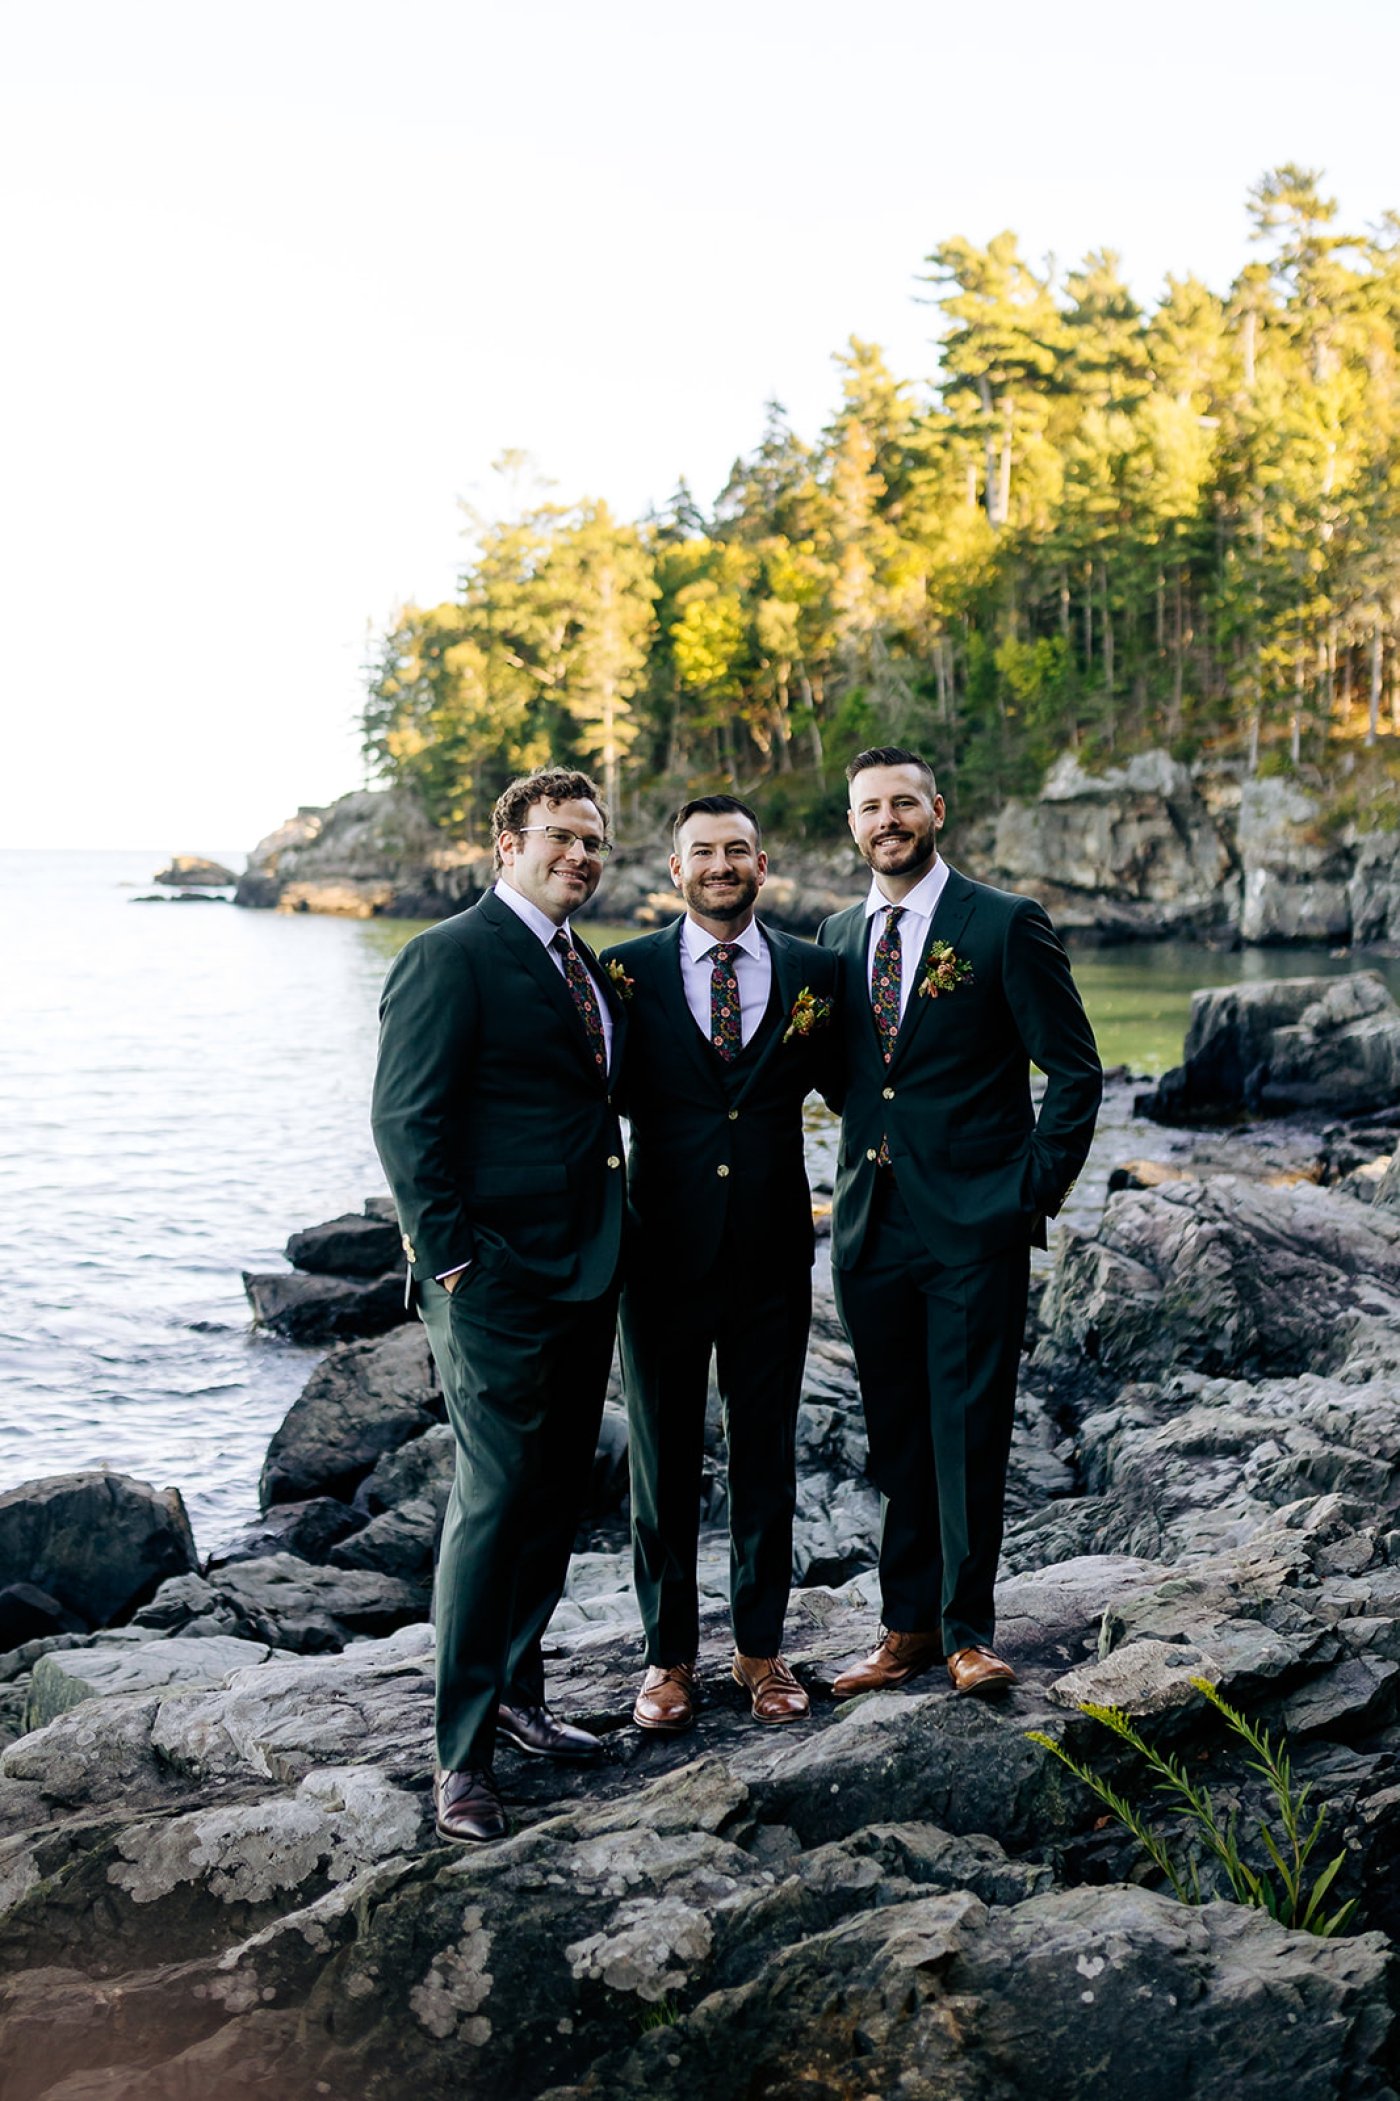 emerald groomsmen suits